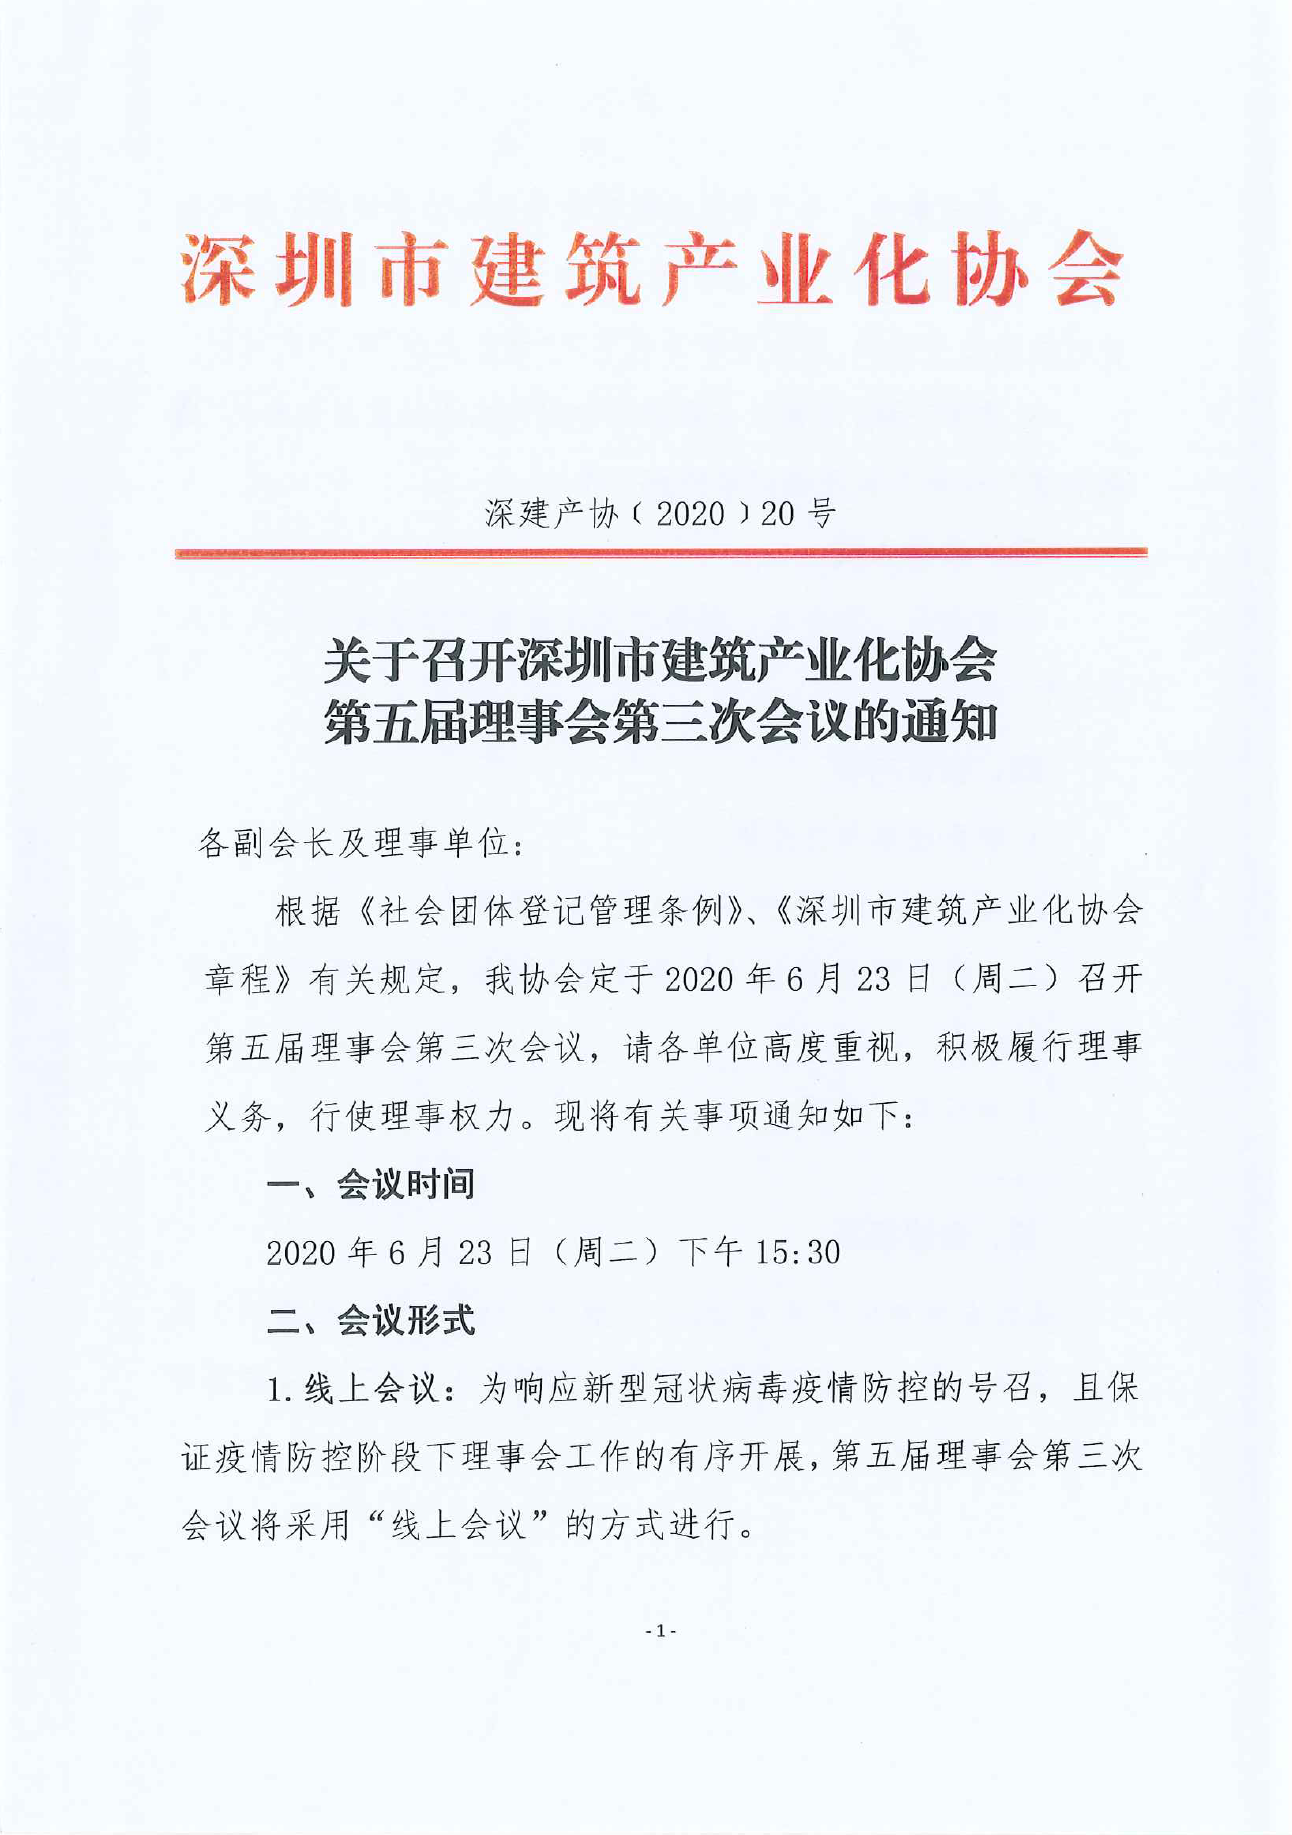 关于召开深圳市建筑产业化协会五届三次理事会的通知